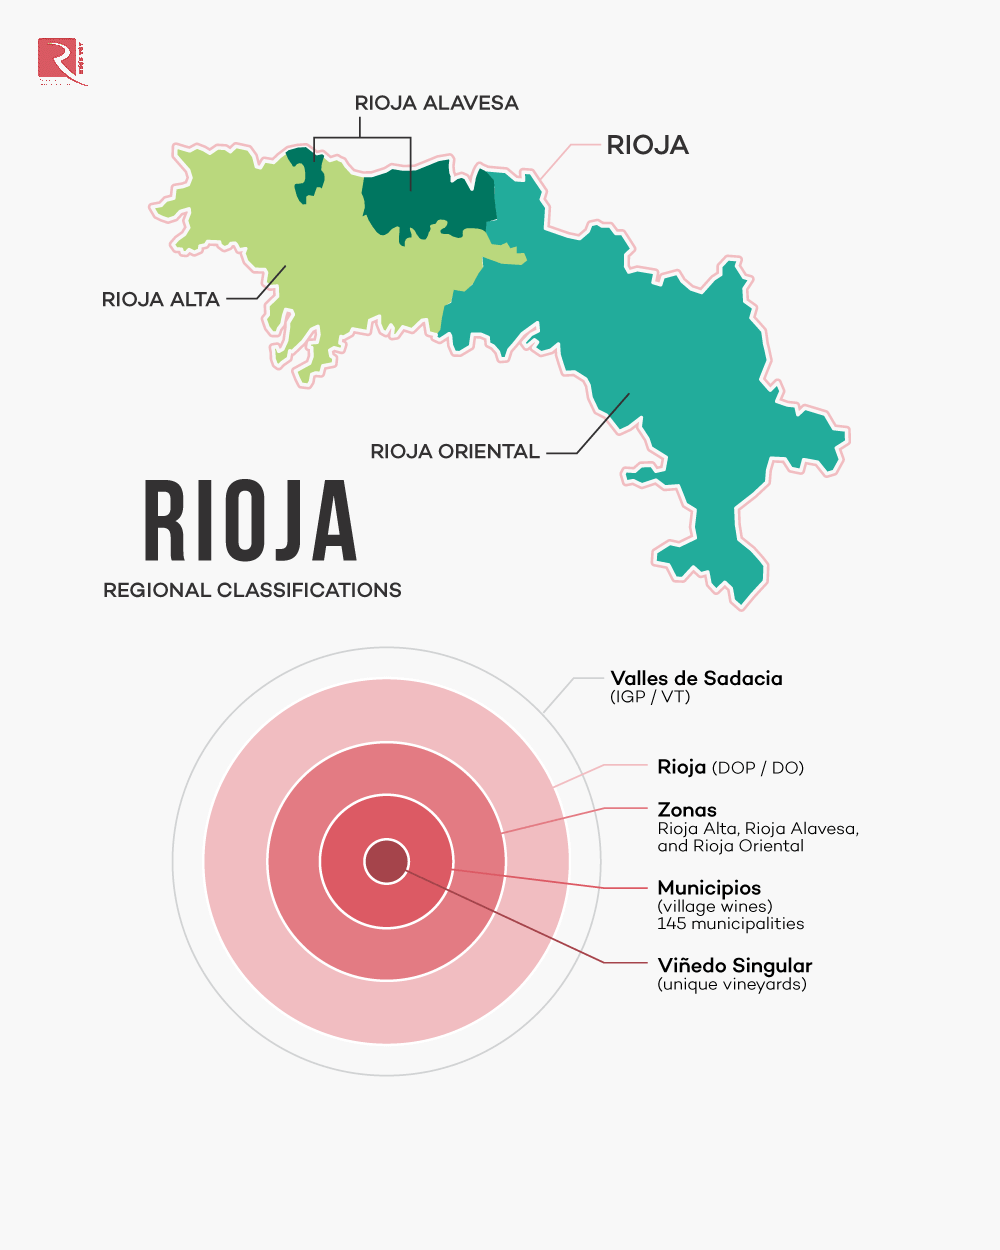 Nhãn khu vực cho Rioja.